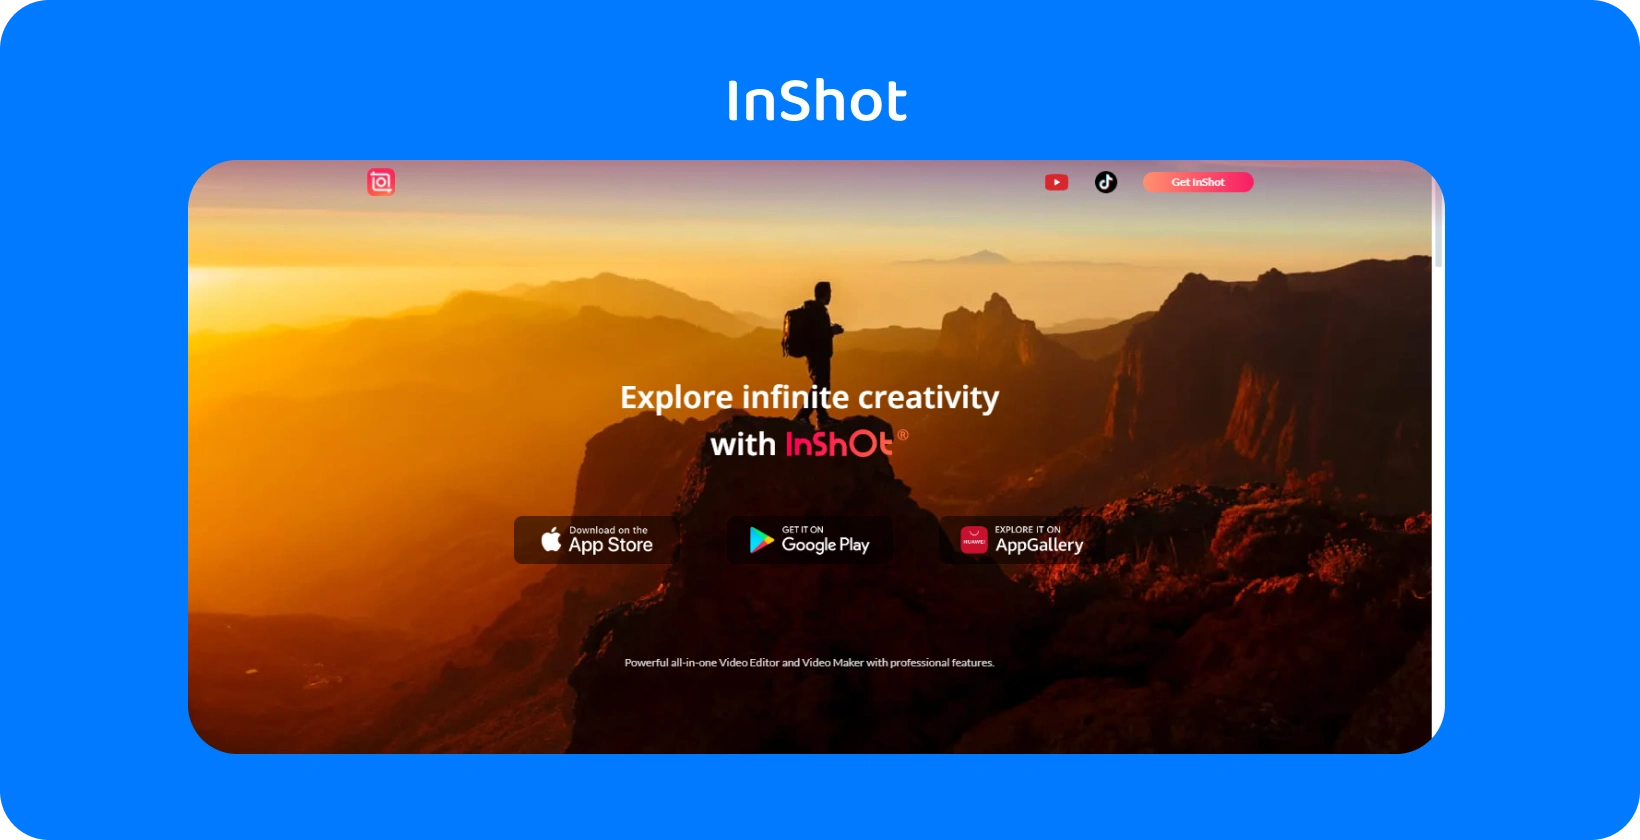 Iklan apl InShot menampilkan pendaki pada waktu matahari terbenam, melambangkan janji apl untuk meneroka kreativiti tak terhingga dalam penyuntingan video.
